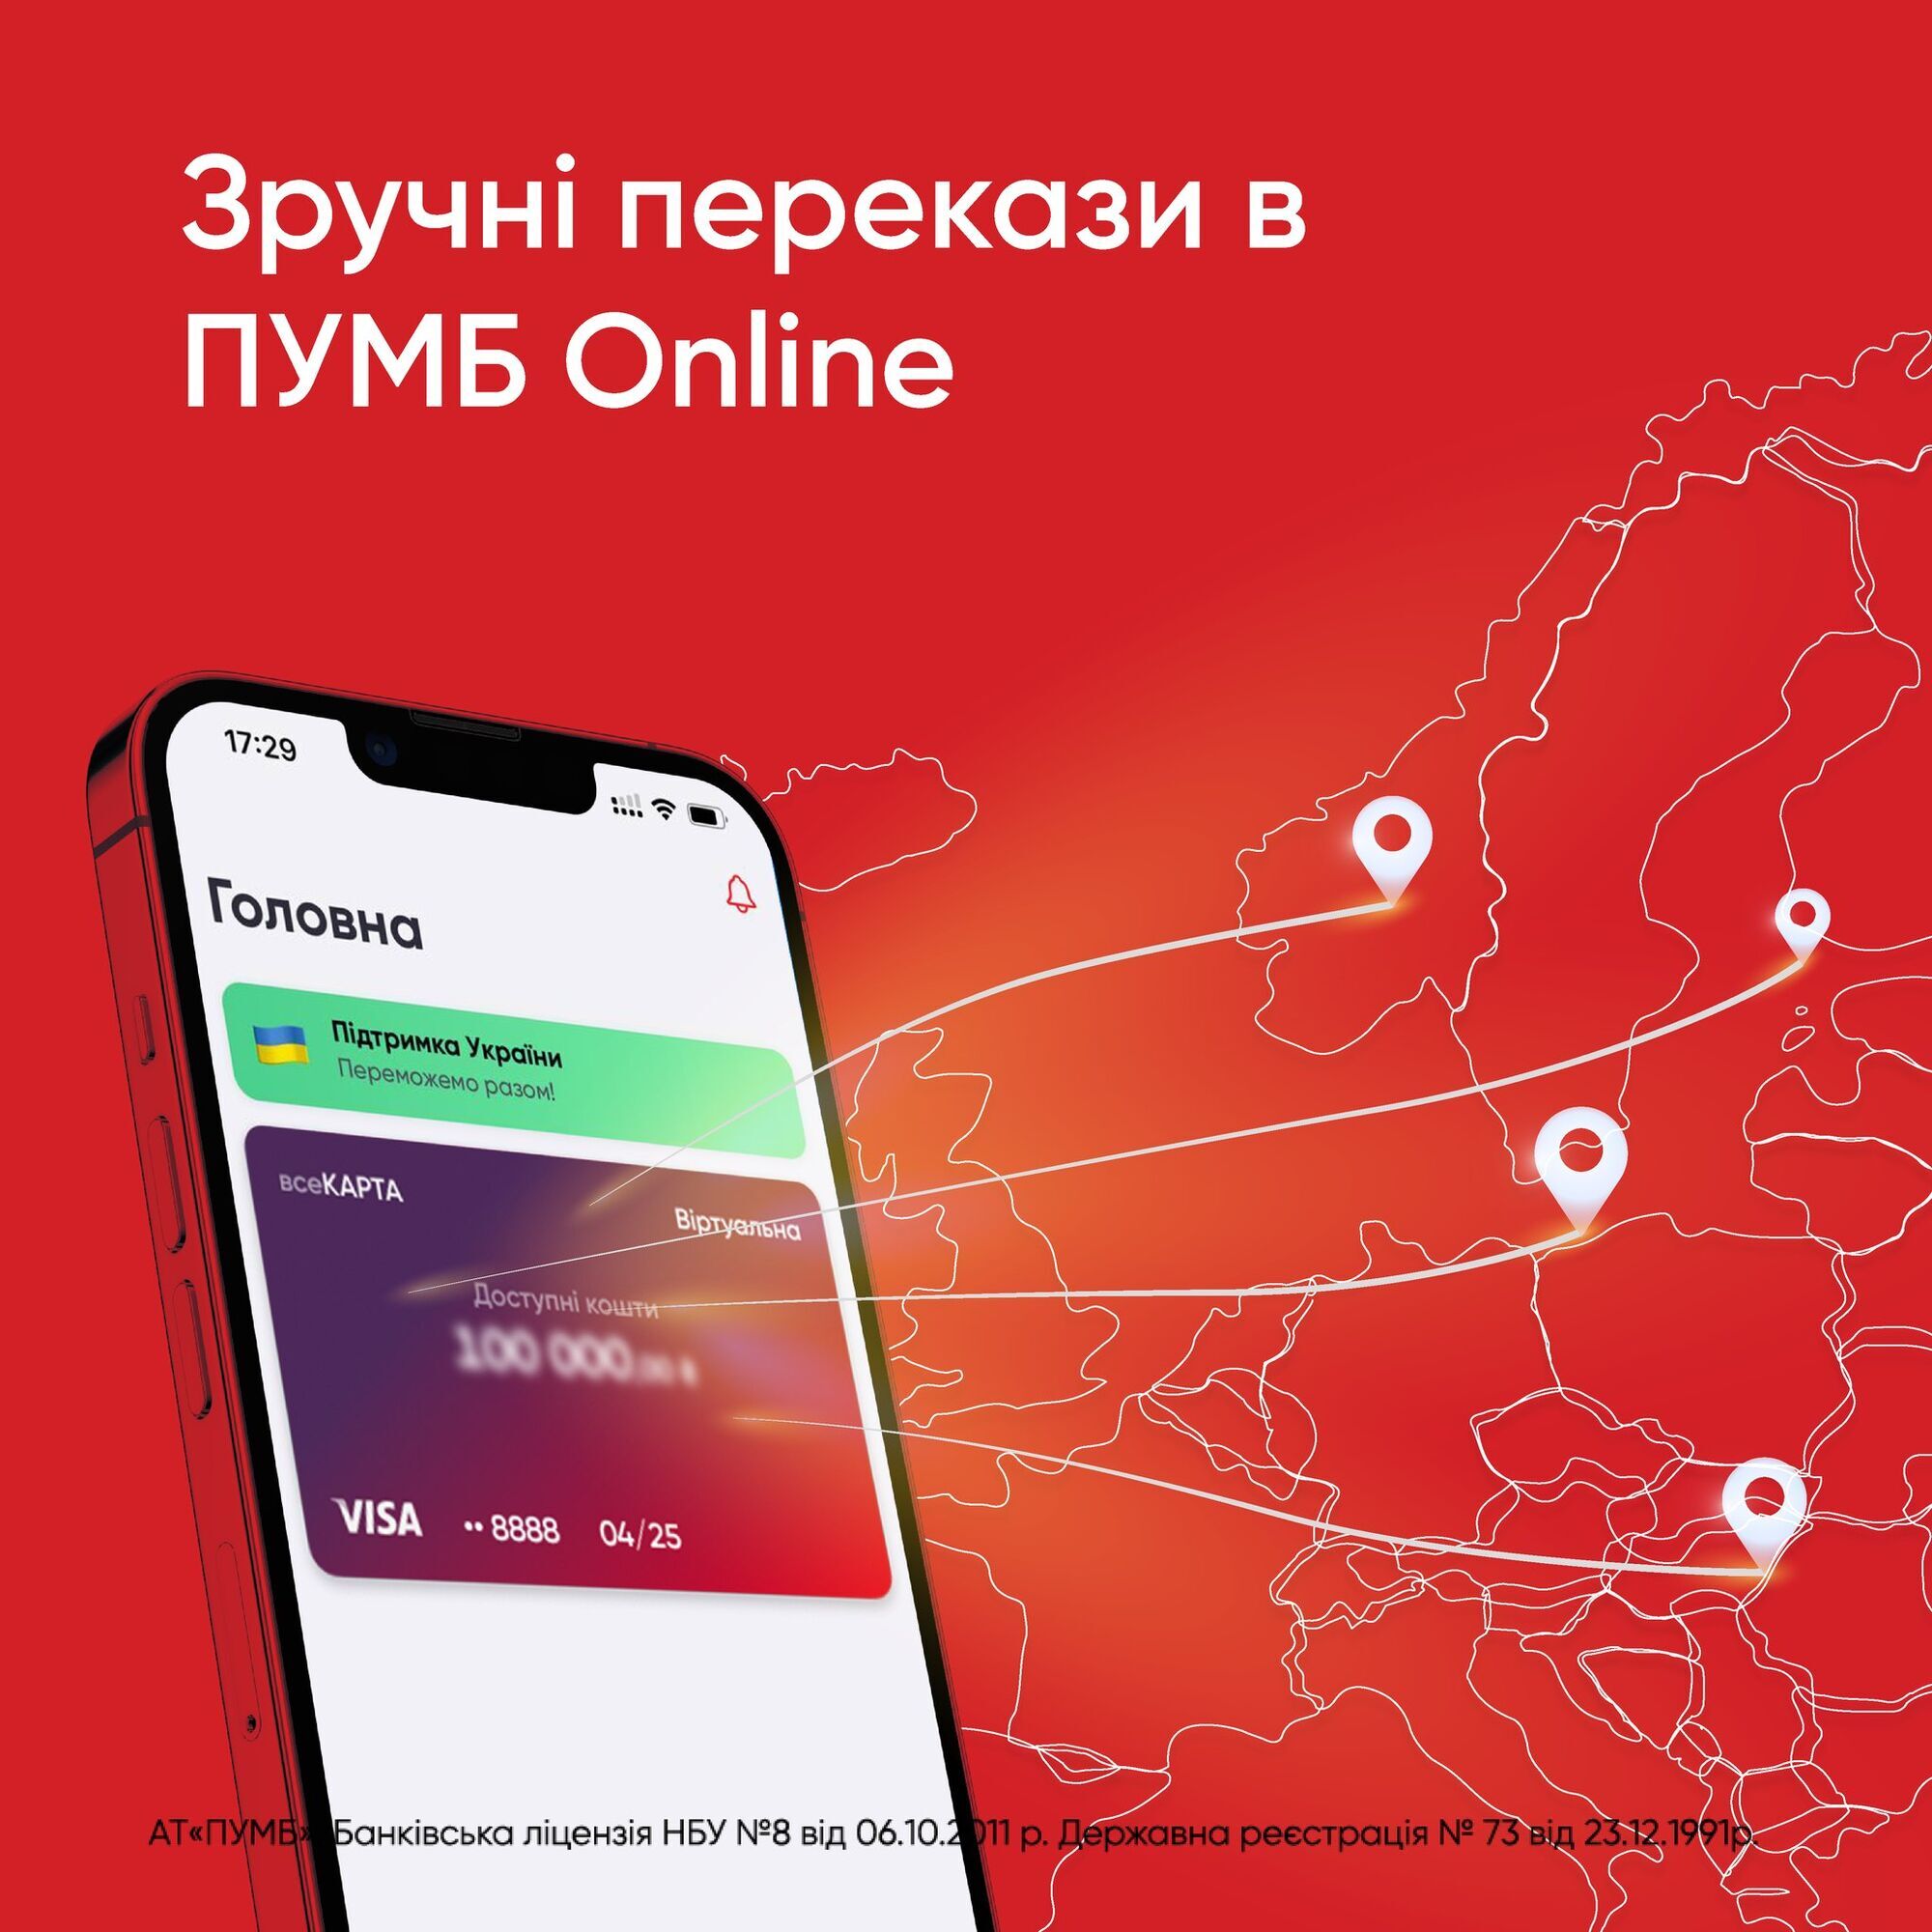 Payoneer у застосунку ПУМБ Online: отримуйте платежі з-за кордону без комісії банку 